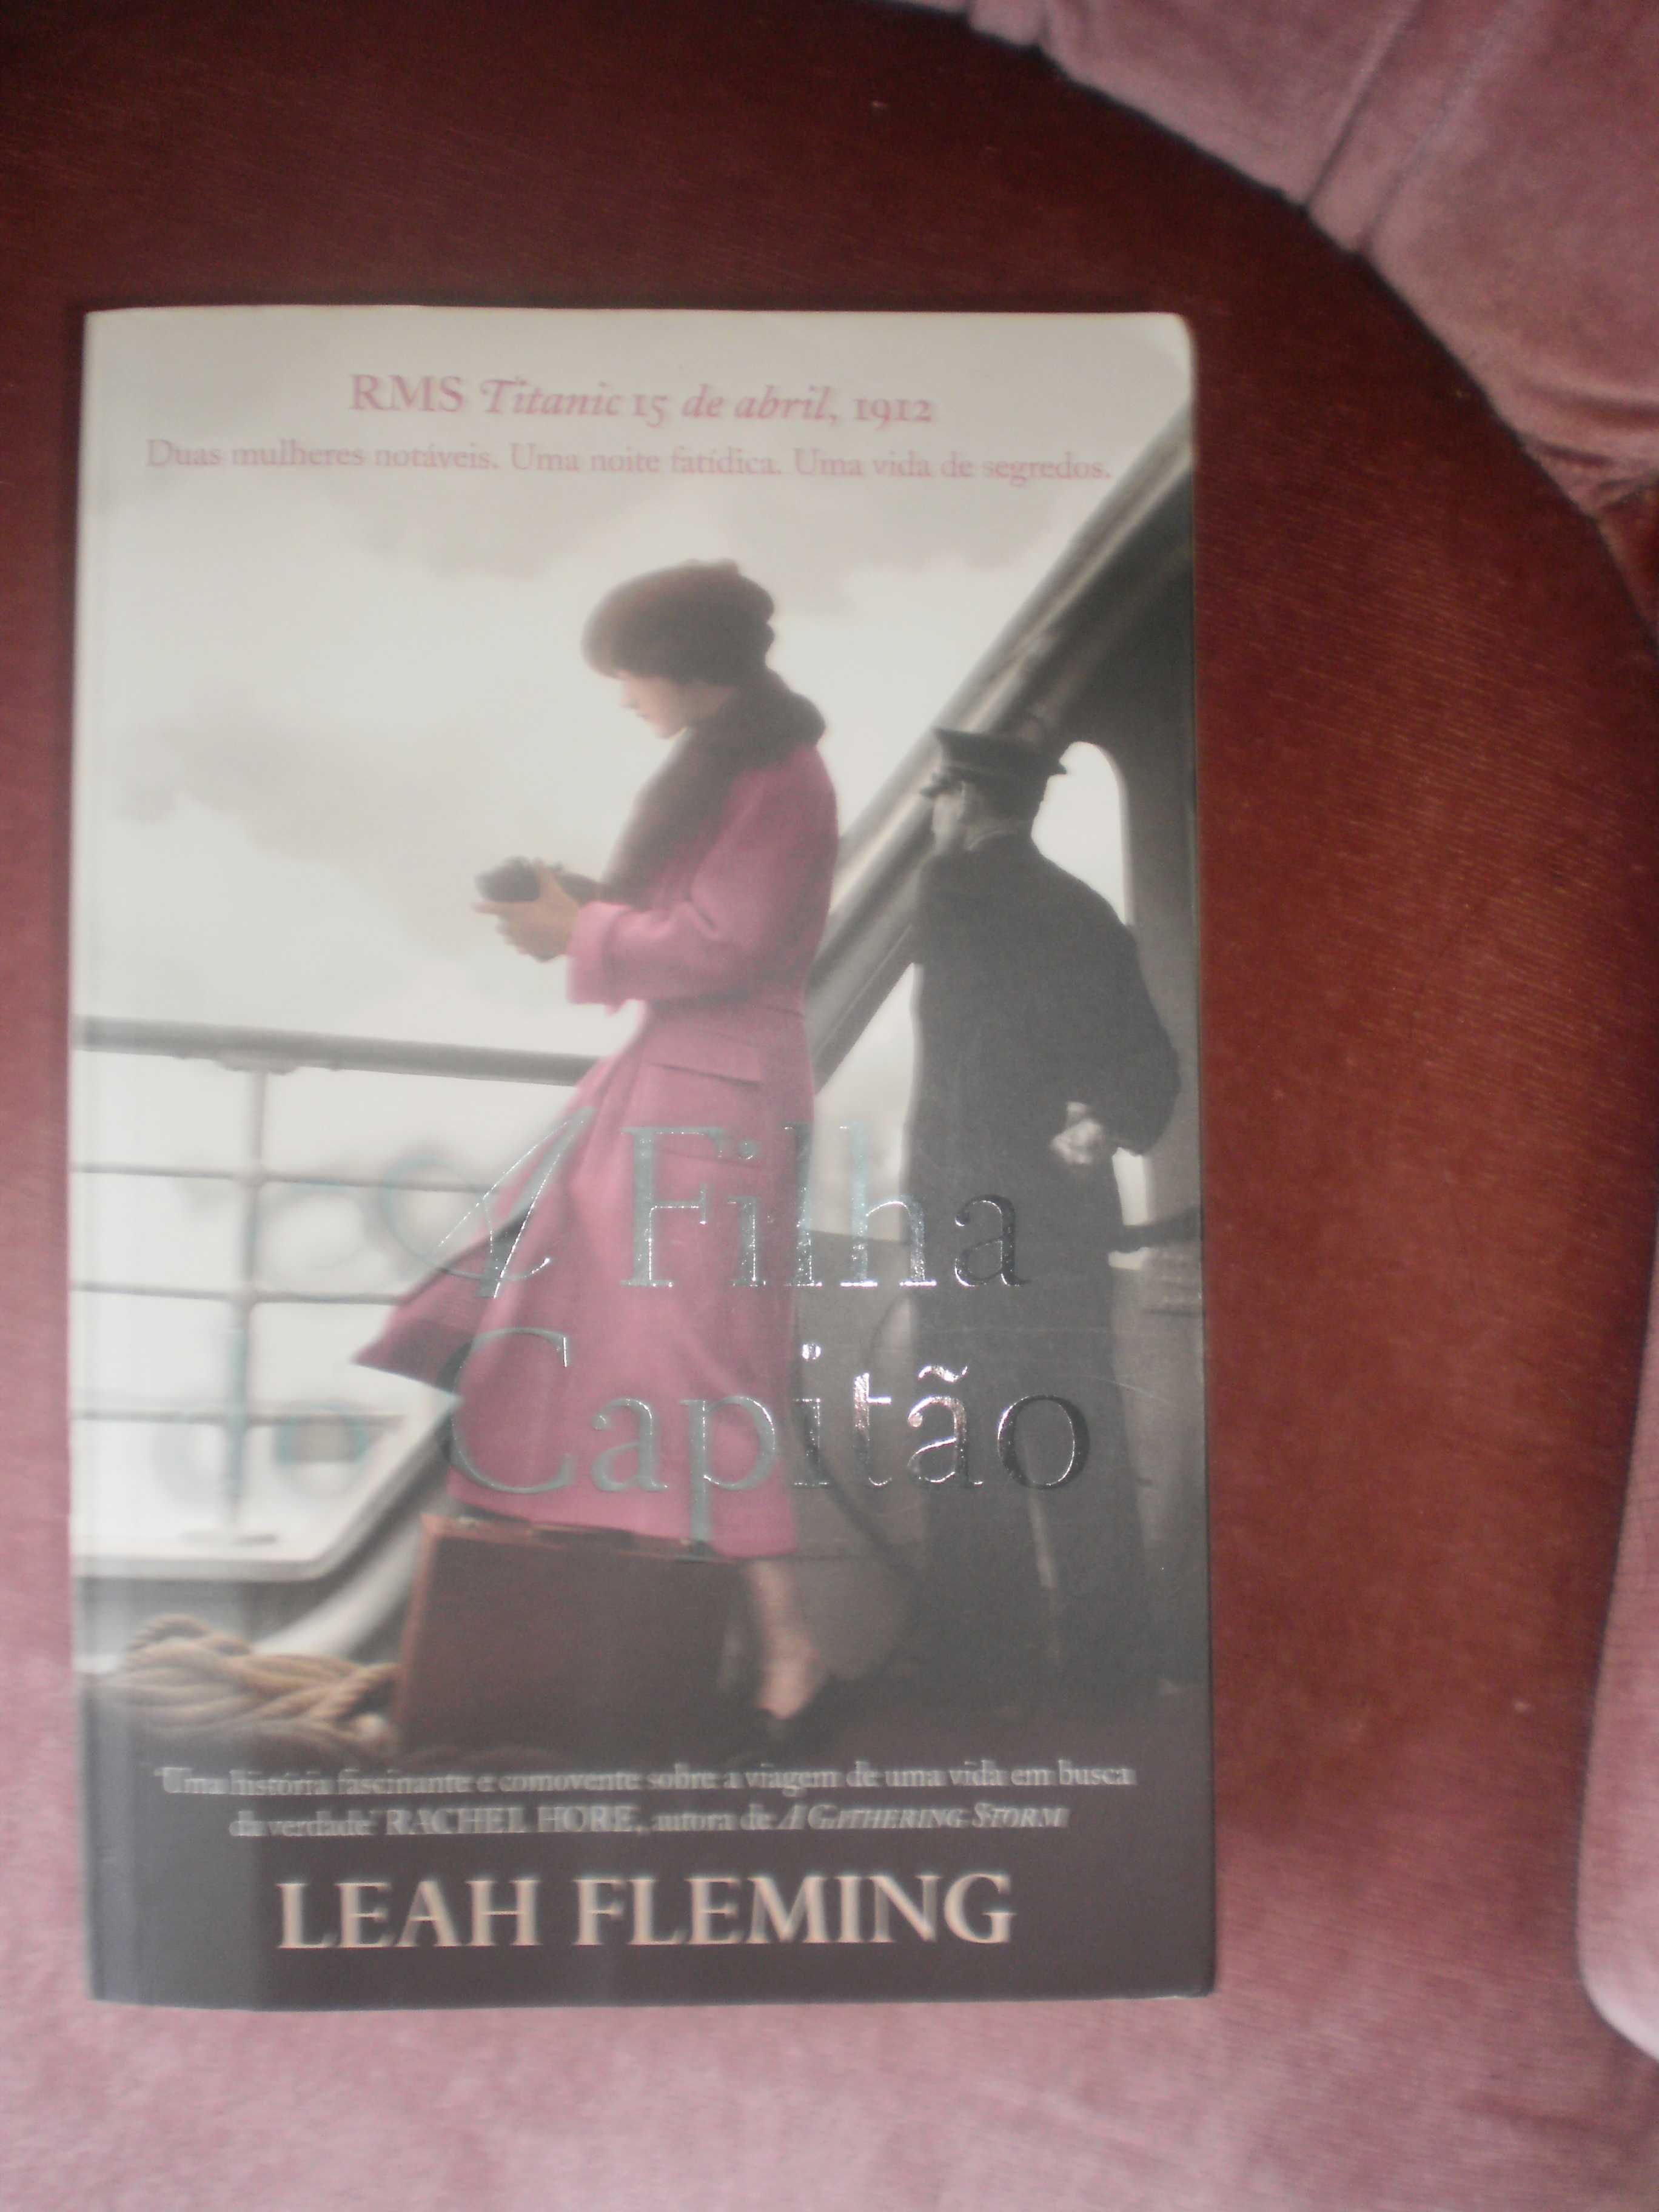 A Filha do Capitão - Leah Fleming